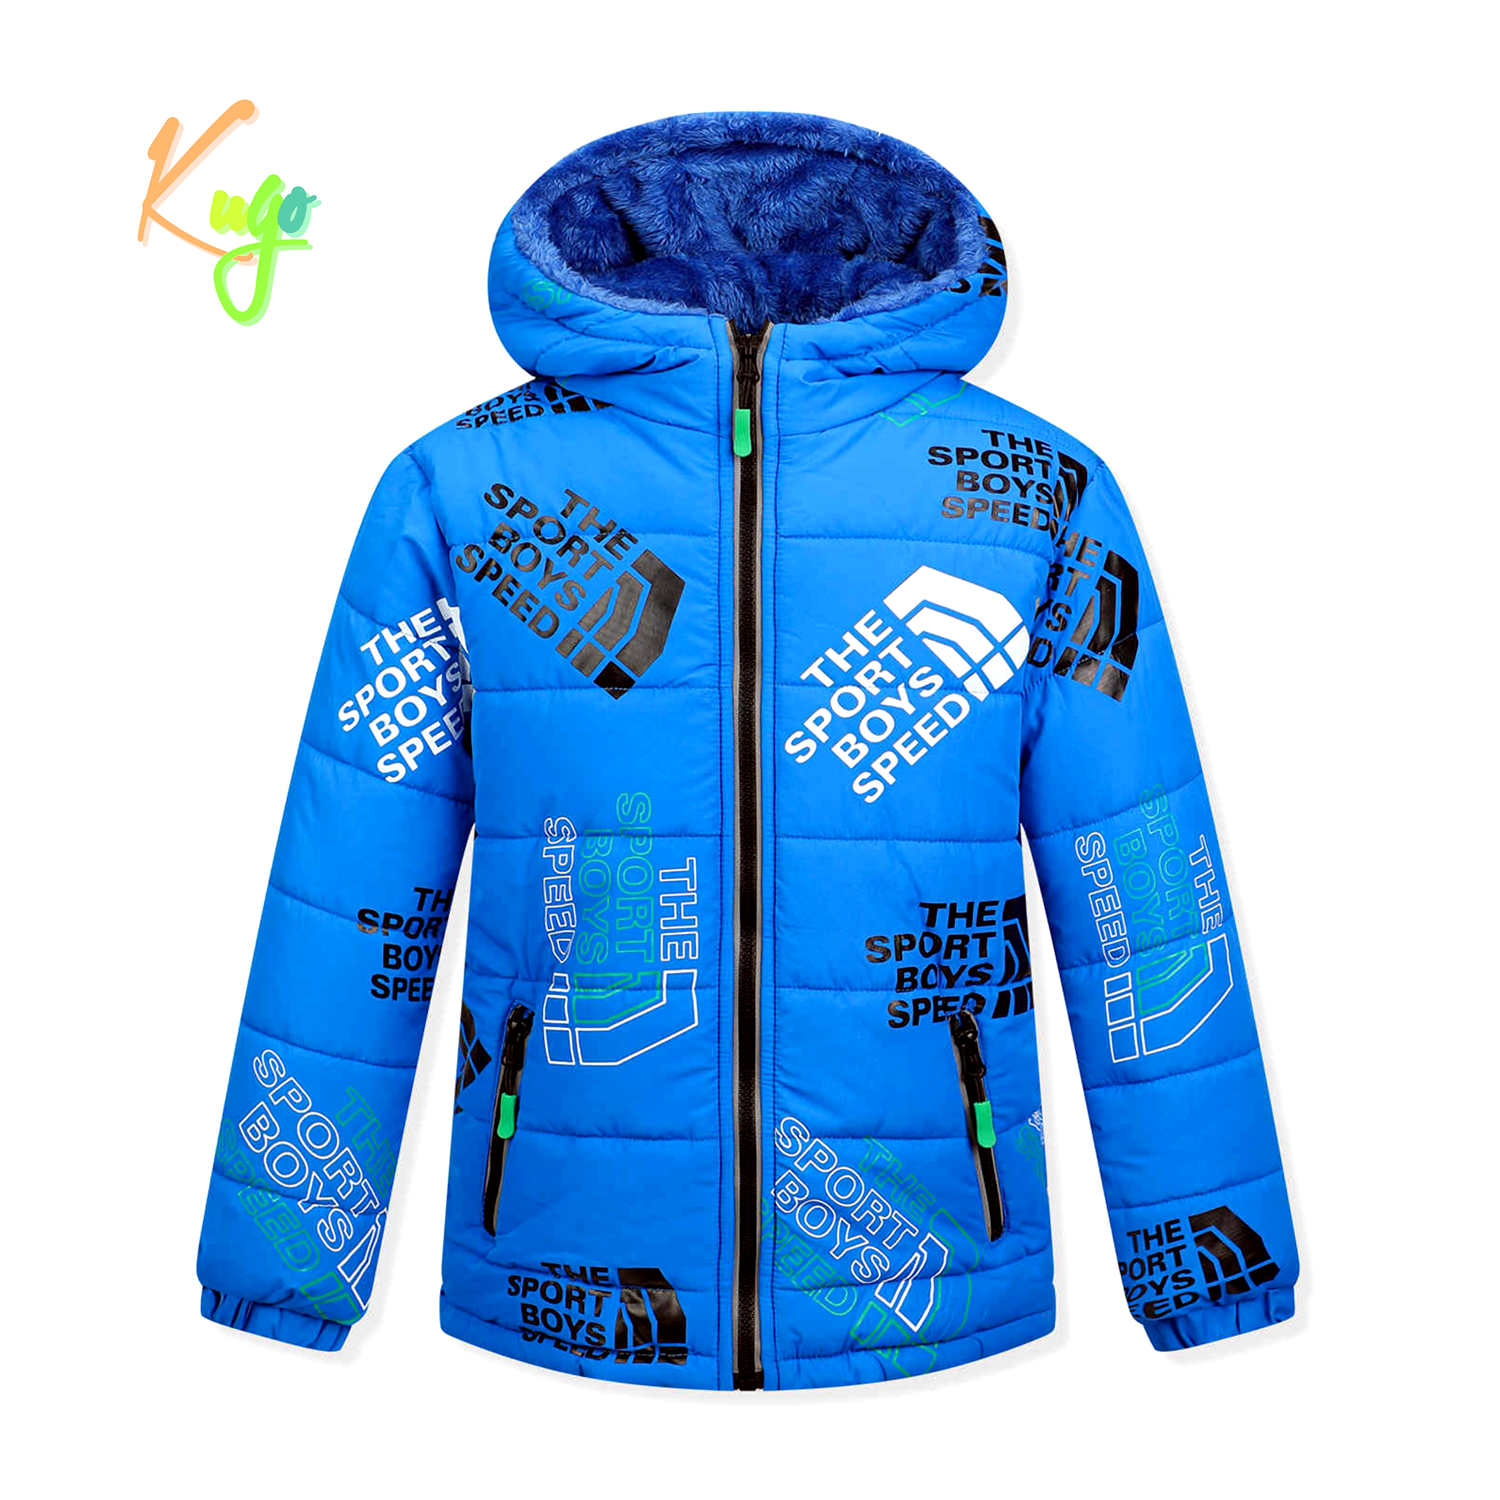 Chlapecká zimní bunda - KUGO FB0325, světle modrá Barva: Modrá světle, Velikost: 140